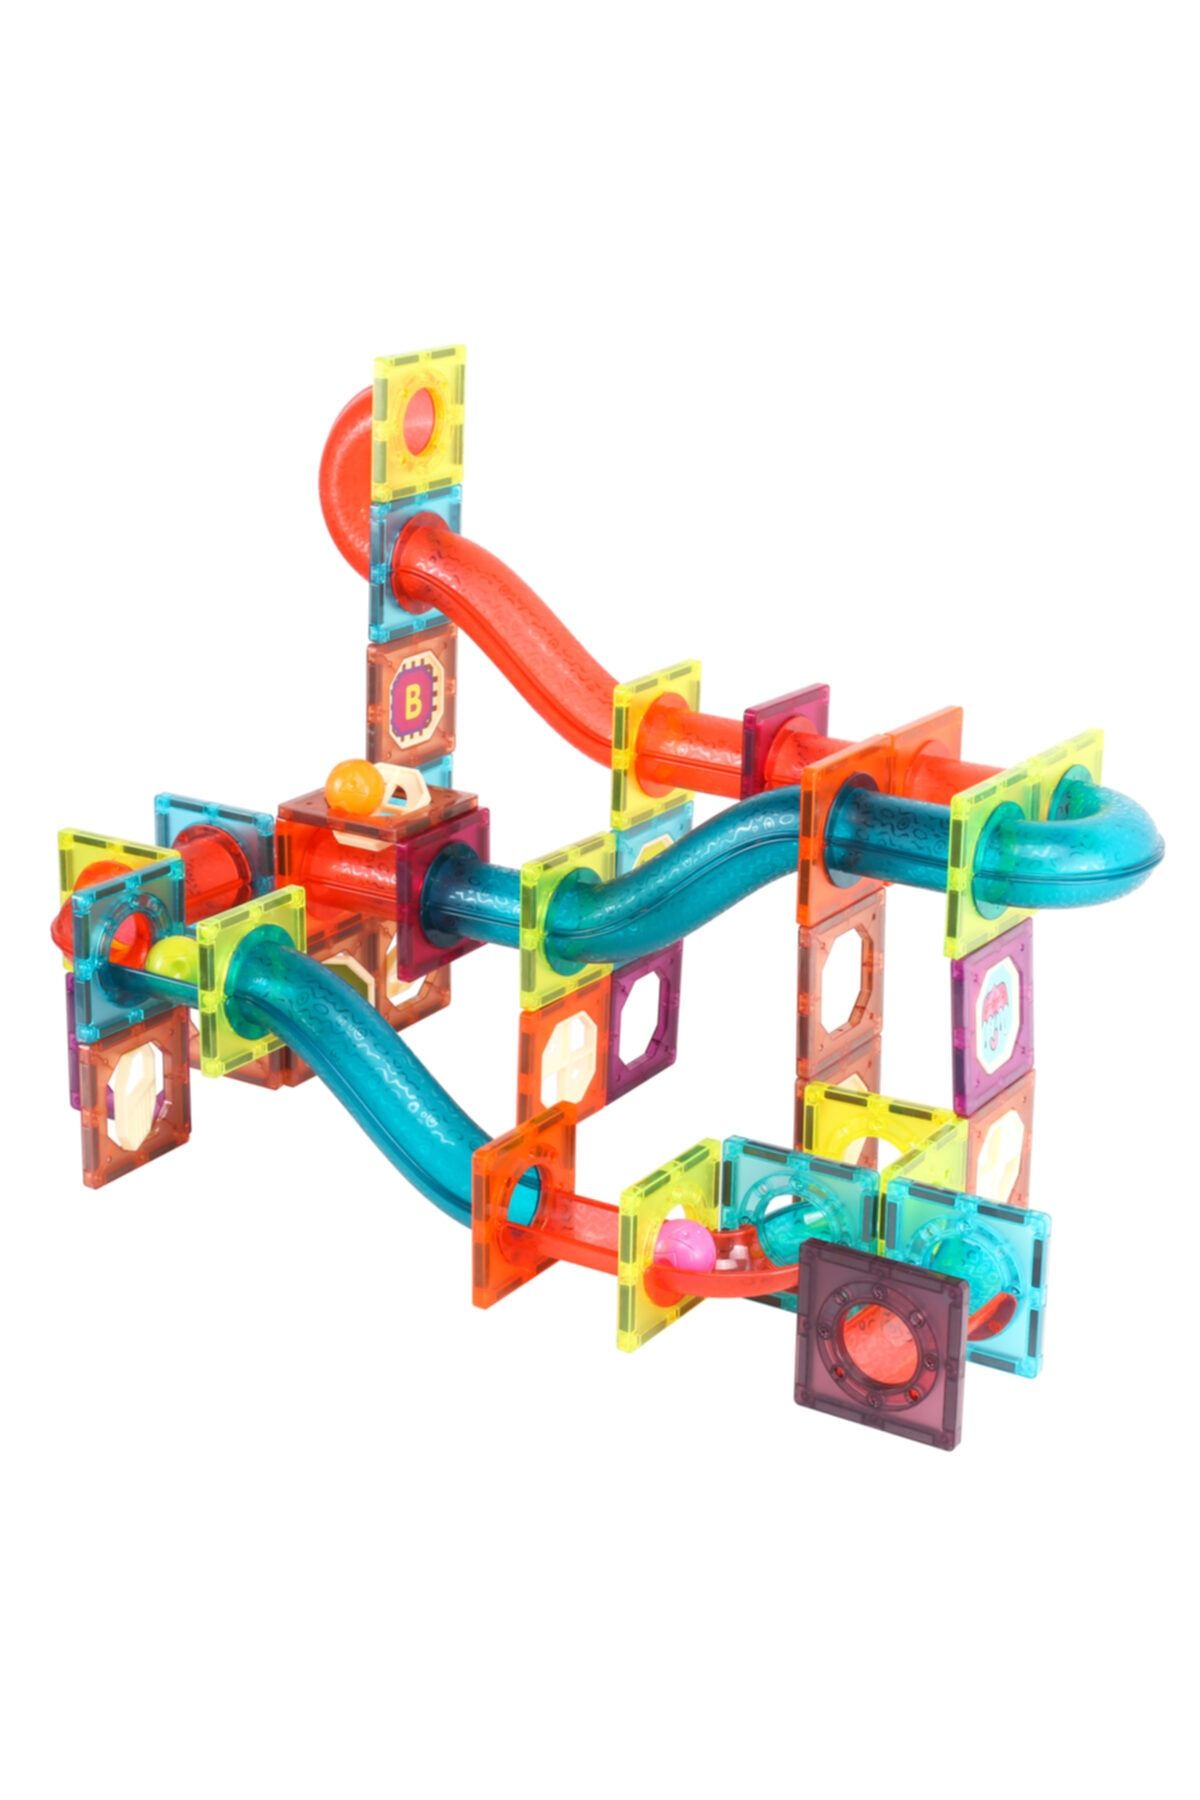 Zenkid 3d Magnet Lego Zeka Geliştirici Eğitici Oyuncak/magblock 188 Parça / Çocuklar Için Eğitici /magblock